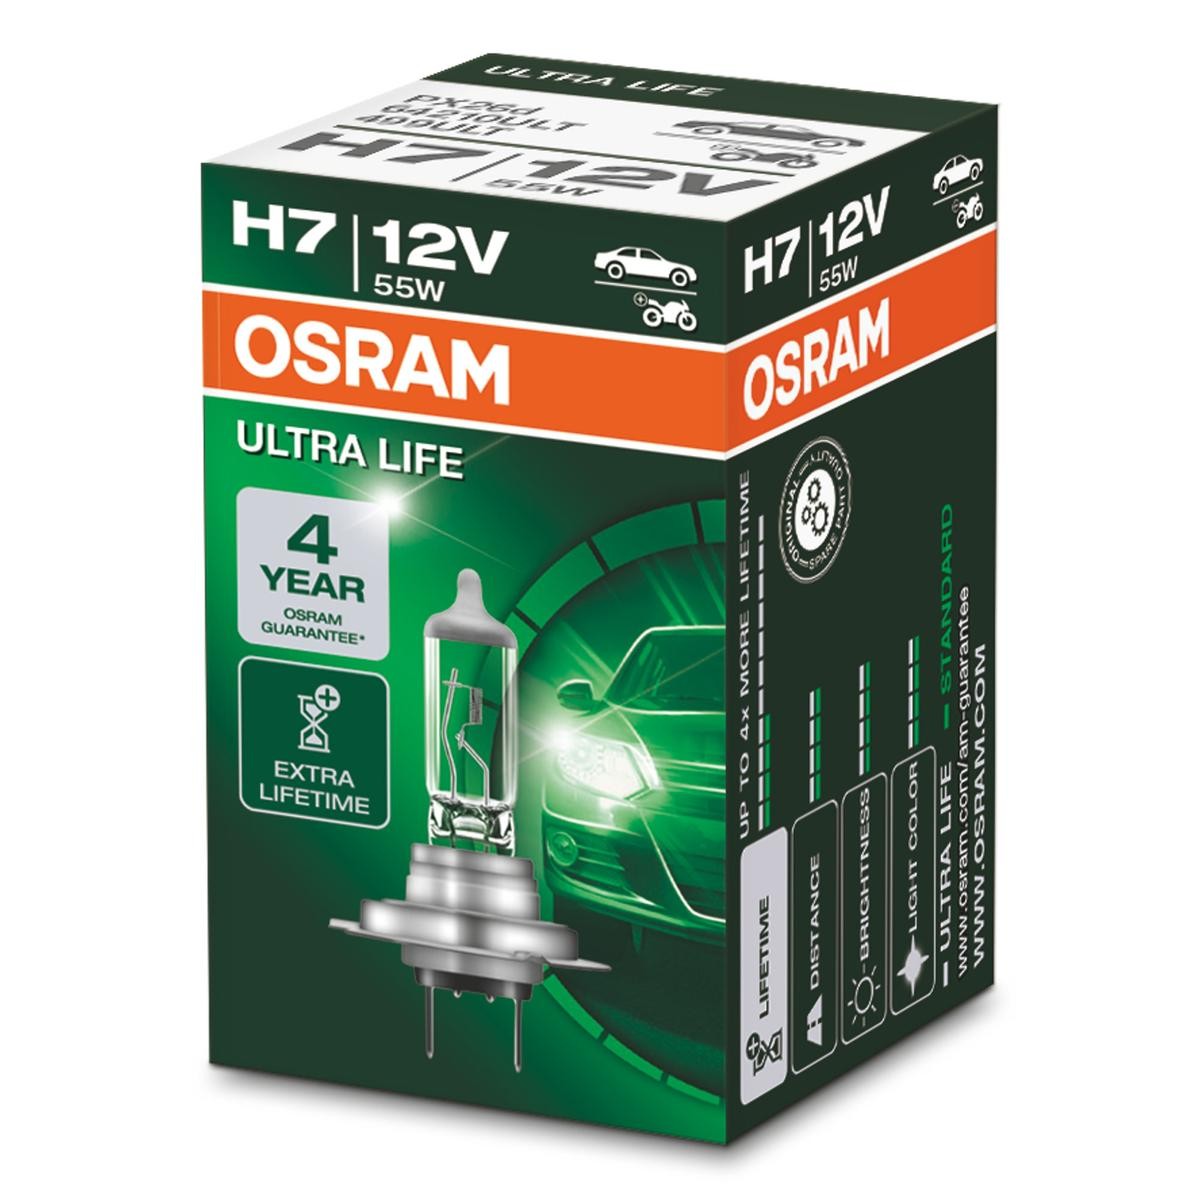 Comprare H7 OSRAM ULTRA LIFE H7 12V 55W3200K Alogeno Lampadina, faro di profondità 64210ULT poco costoso